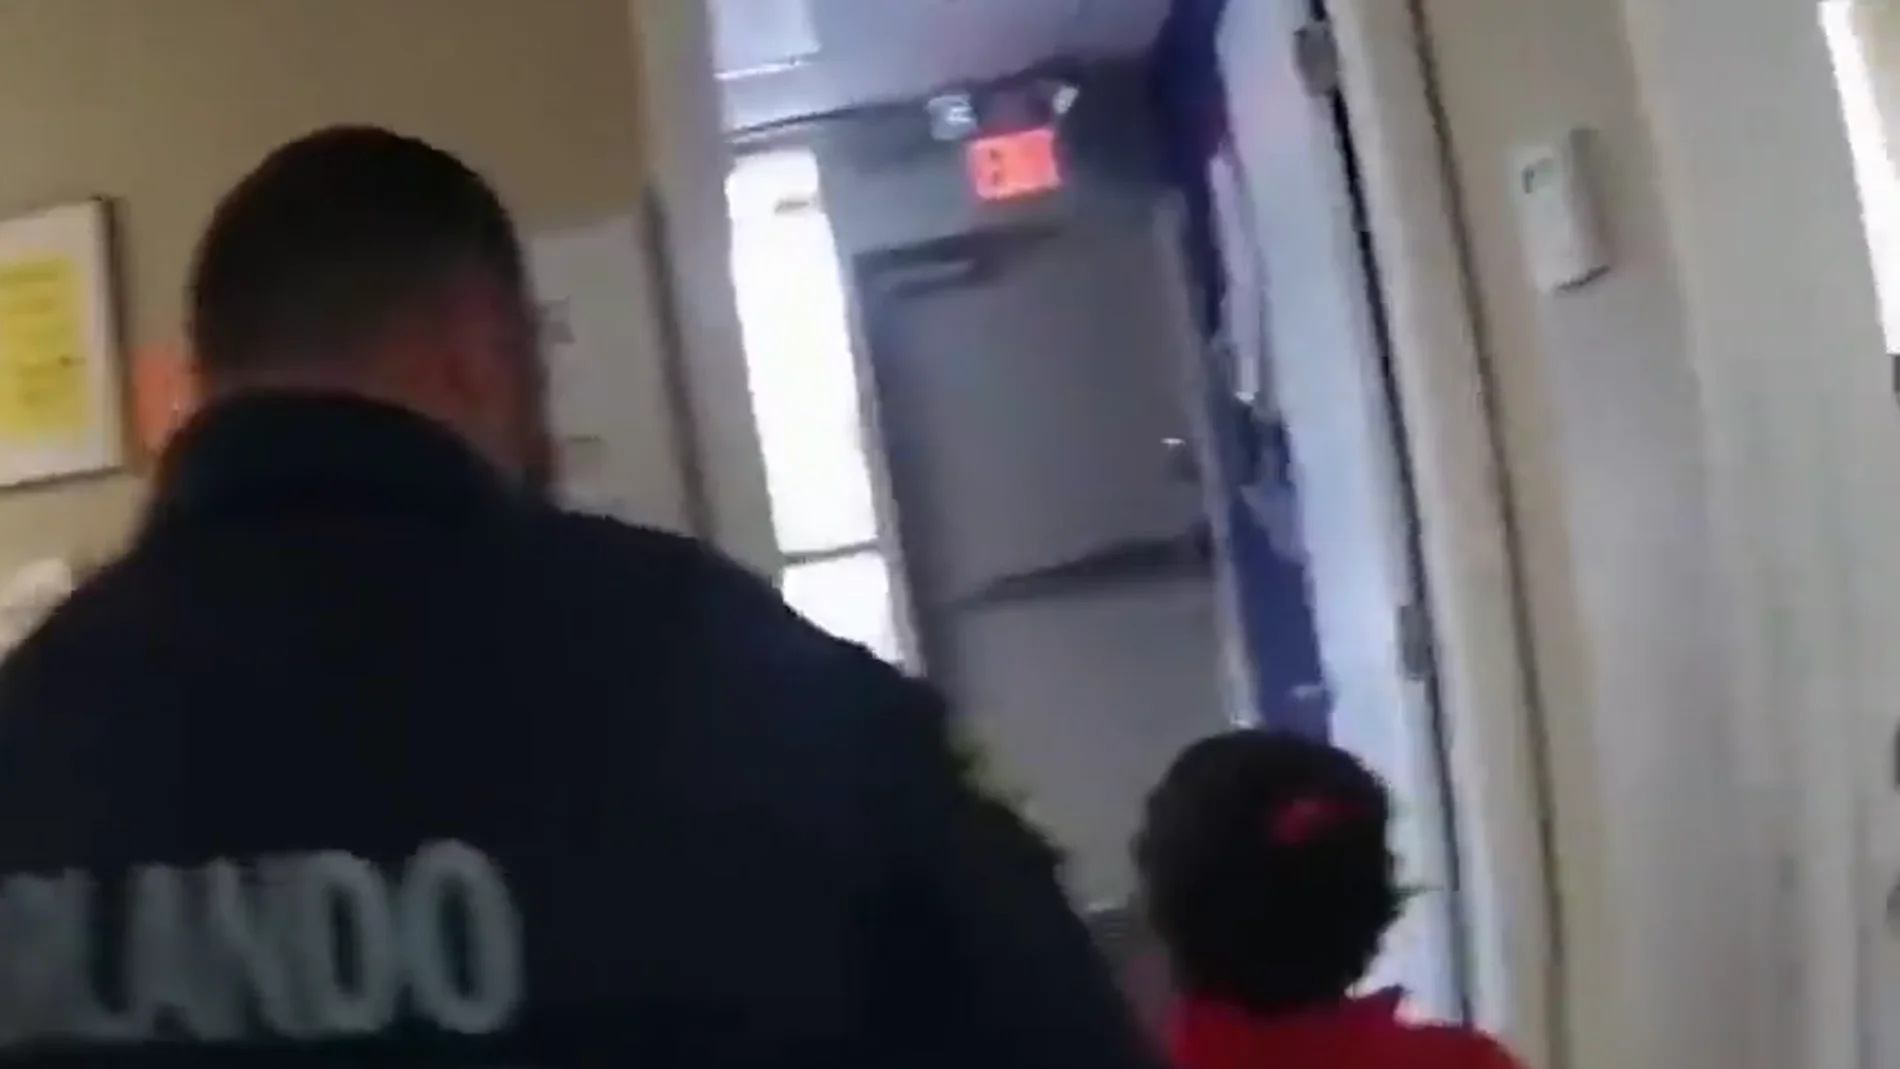 Salen a la luz las imágenes de la detención de una niña de seis años en Estados Unidos: se la llevaron esposada del colegio